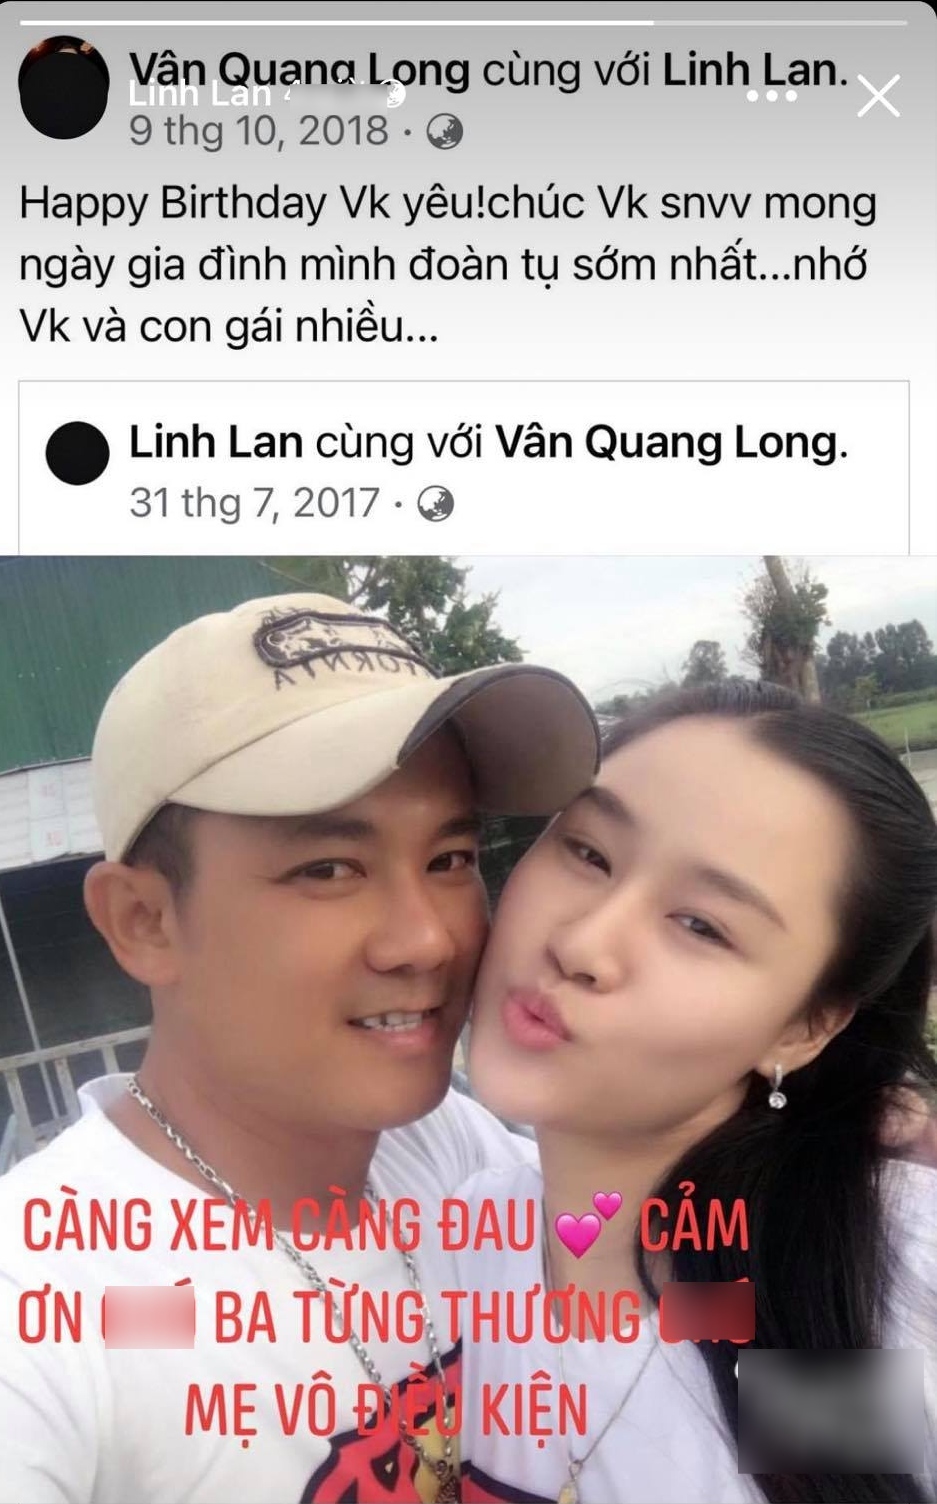  
Vợ Vân Quang Long chia sẻ kỷ niệm cùng chồng quá cố trong ngày sinh nhật. (Ảnh: Chụp màn hình) - Tin sao Viet - Tin tuc sao Viet - Scandal sao Viet - Tin tuc cua Sao - Tin cua Sao